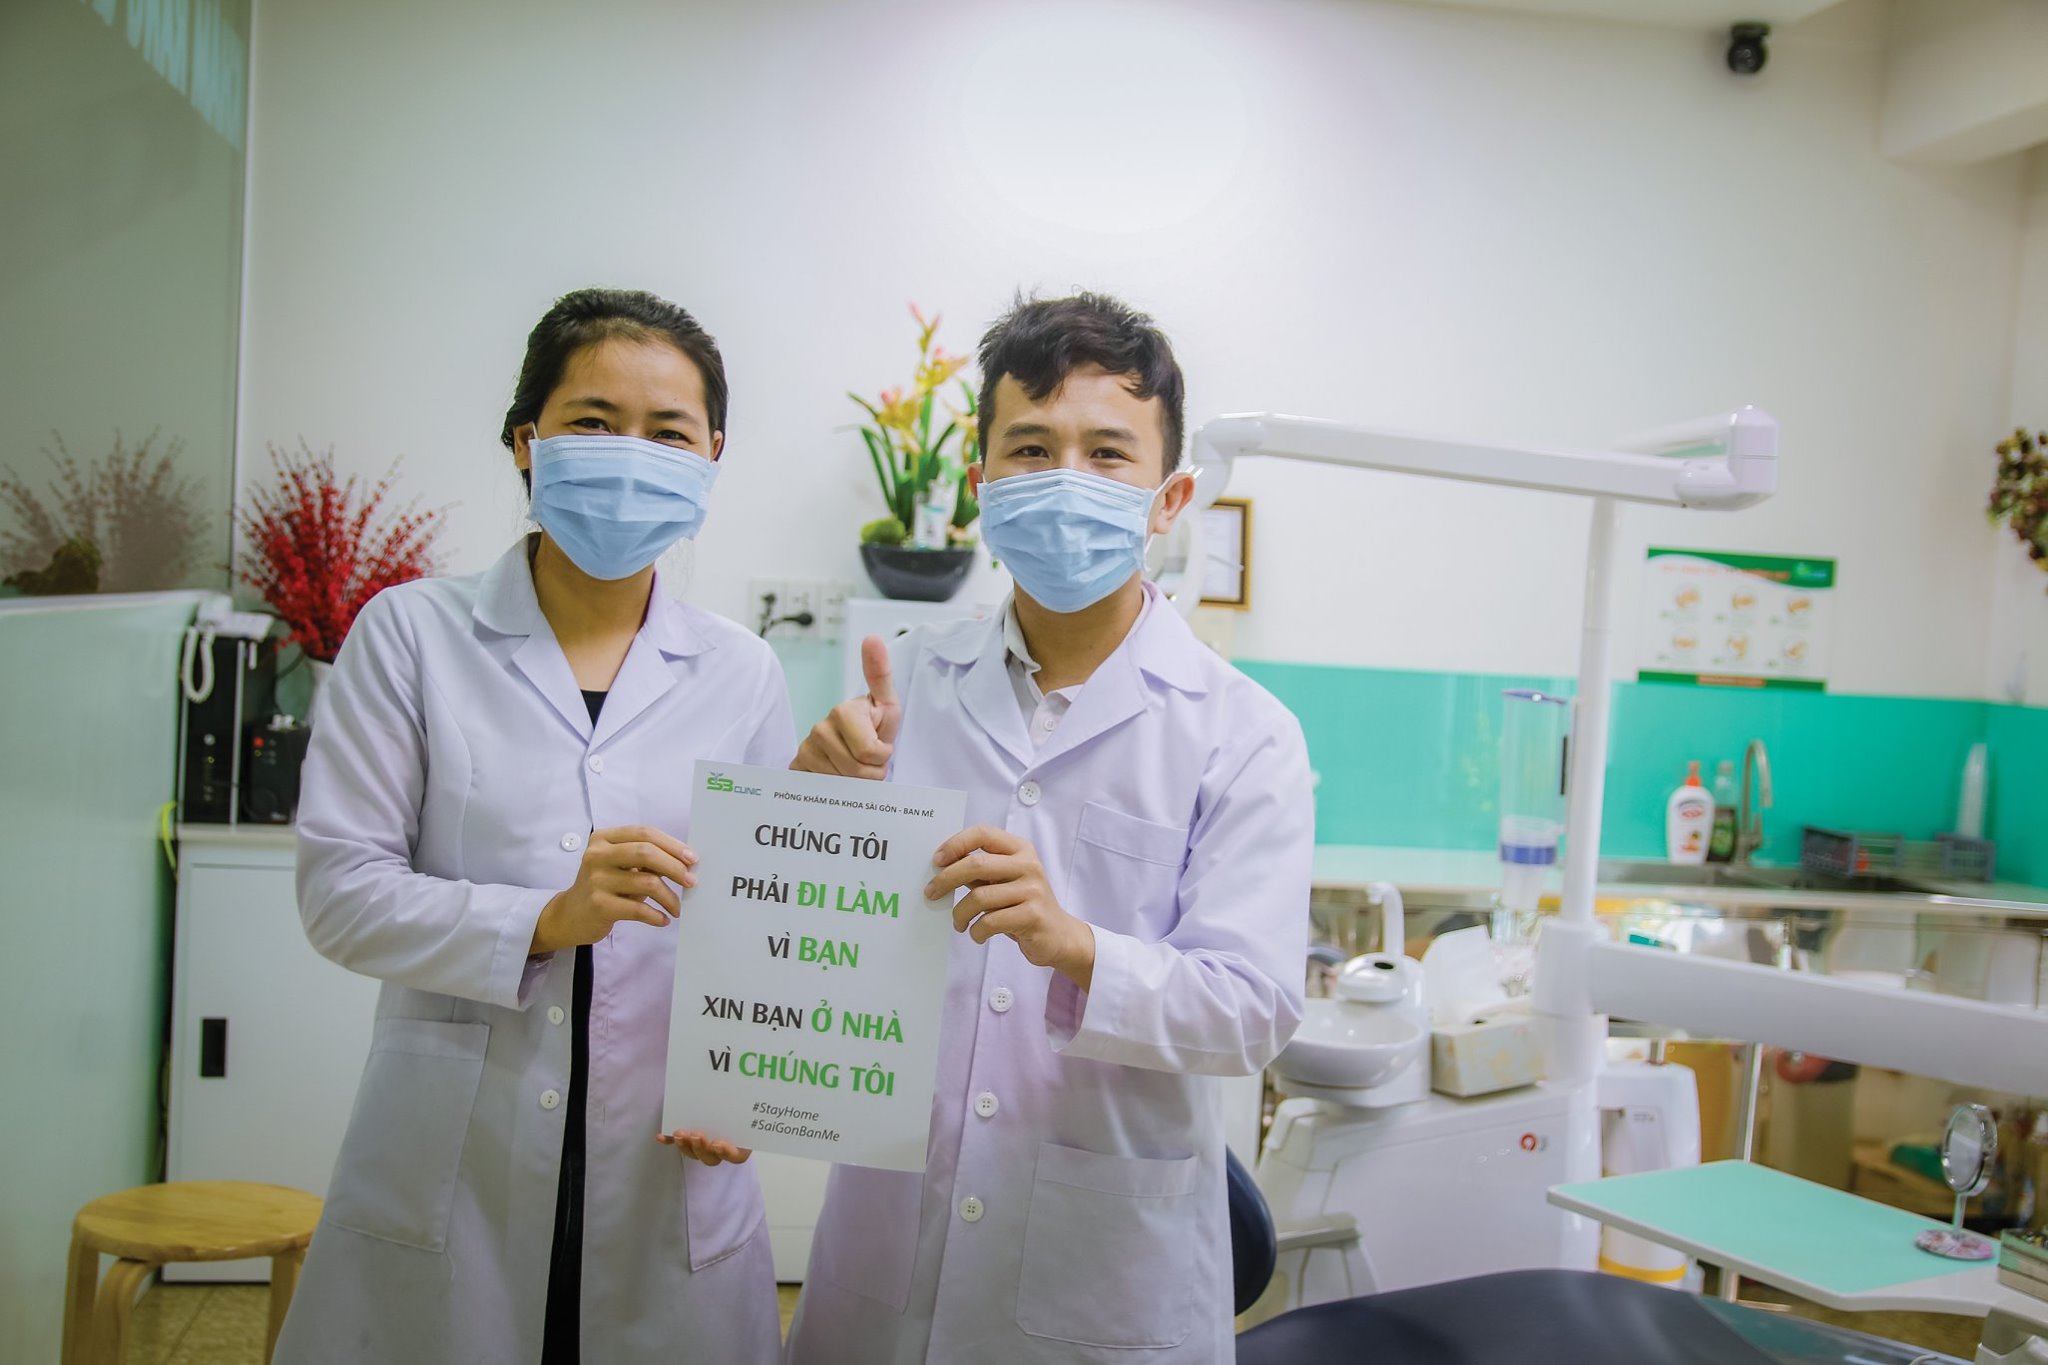 Thông điệp của ngành y "Vì chúng ta cần nhau" đã lan tỏa đến Sài Gòn - Ban Mê